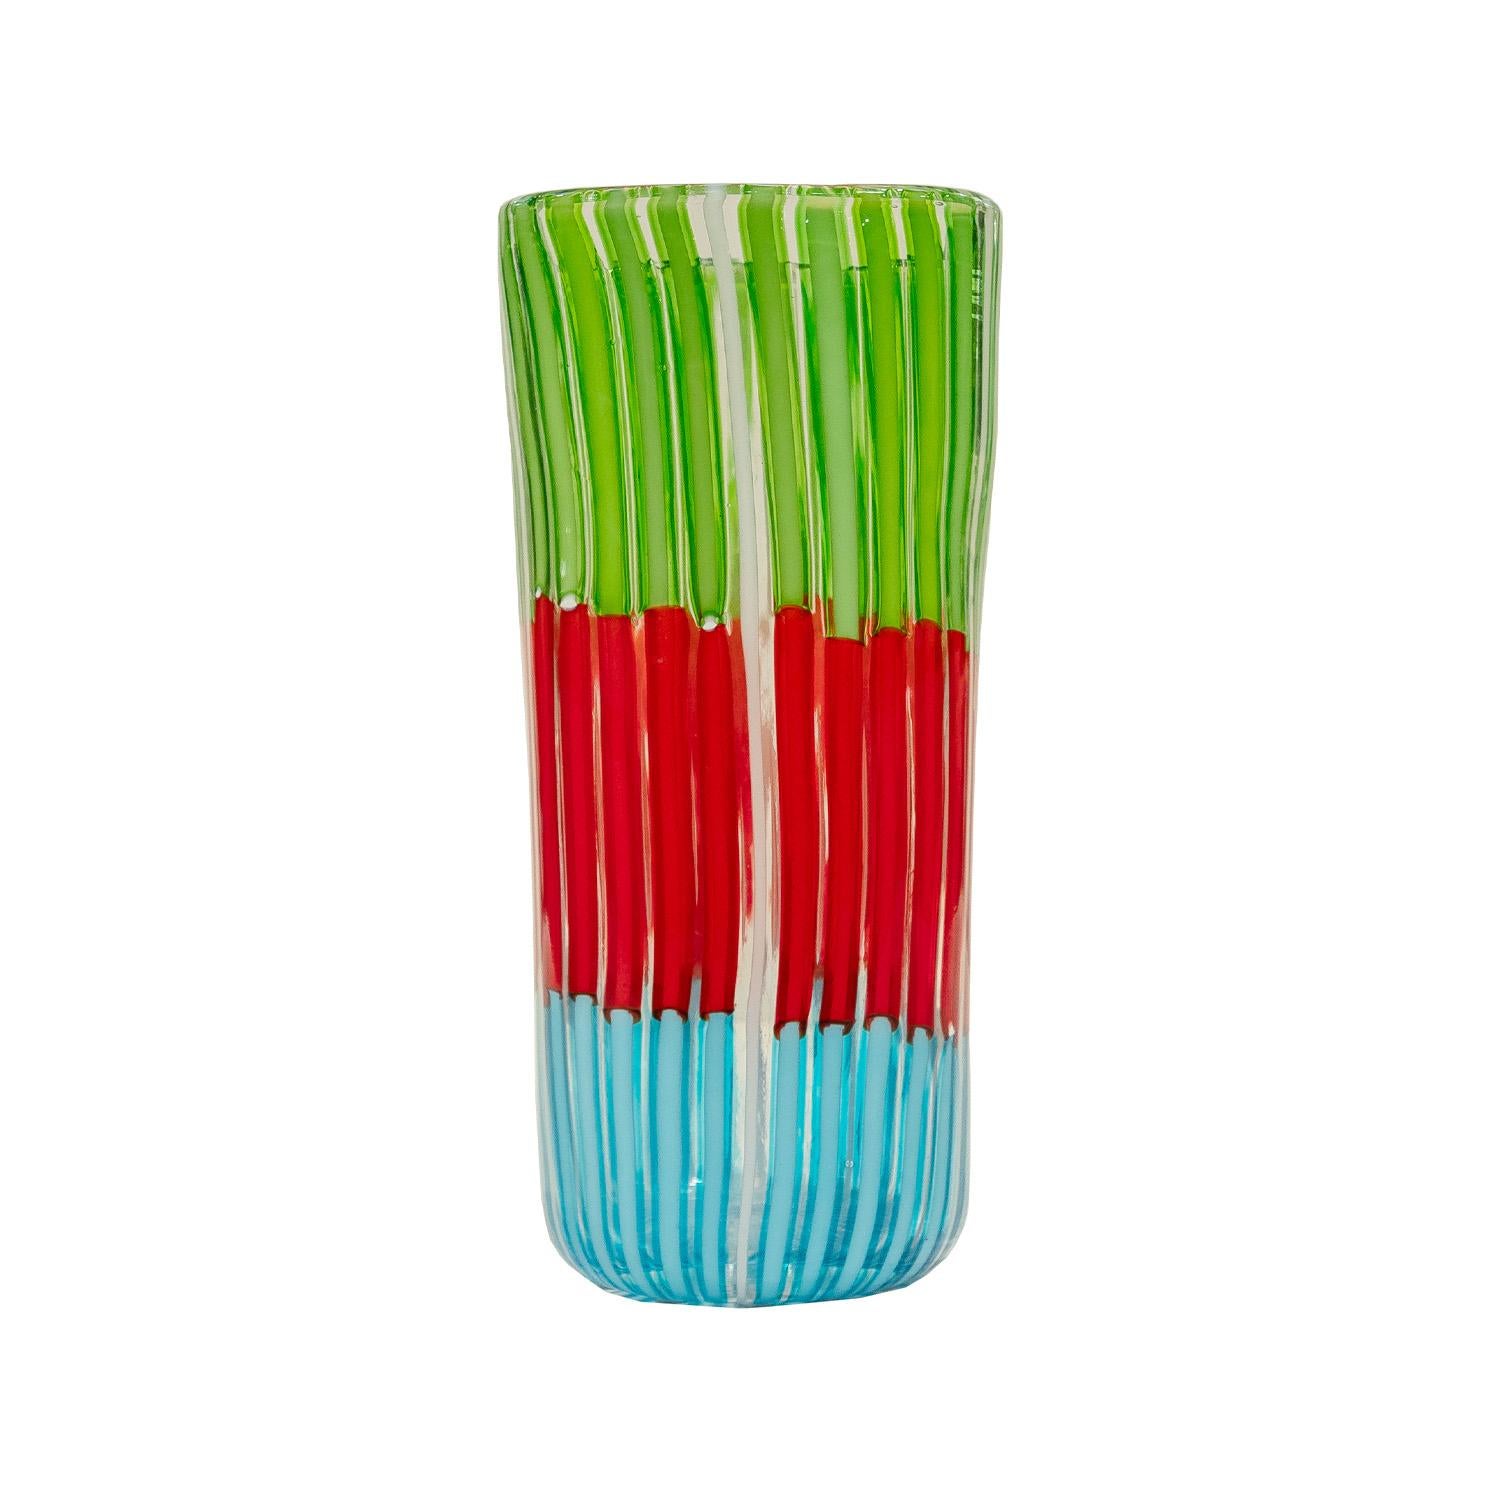 Vase aus mundgeblasenem Glas aus der Serie Bandiere mit mehrfarbigen vertikalen Stäben von Anzolo Fuga für AVEM (Arte Vetraria Muranese), Murano Italien, 1955-6.  Die klaren und weißen Stäbe zwischen den farbigen Stäben ergeben ein sehr auffälliges